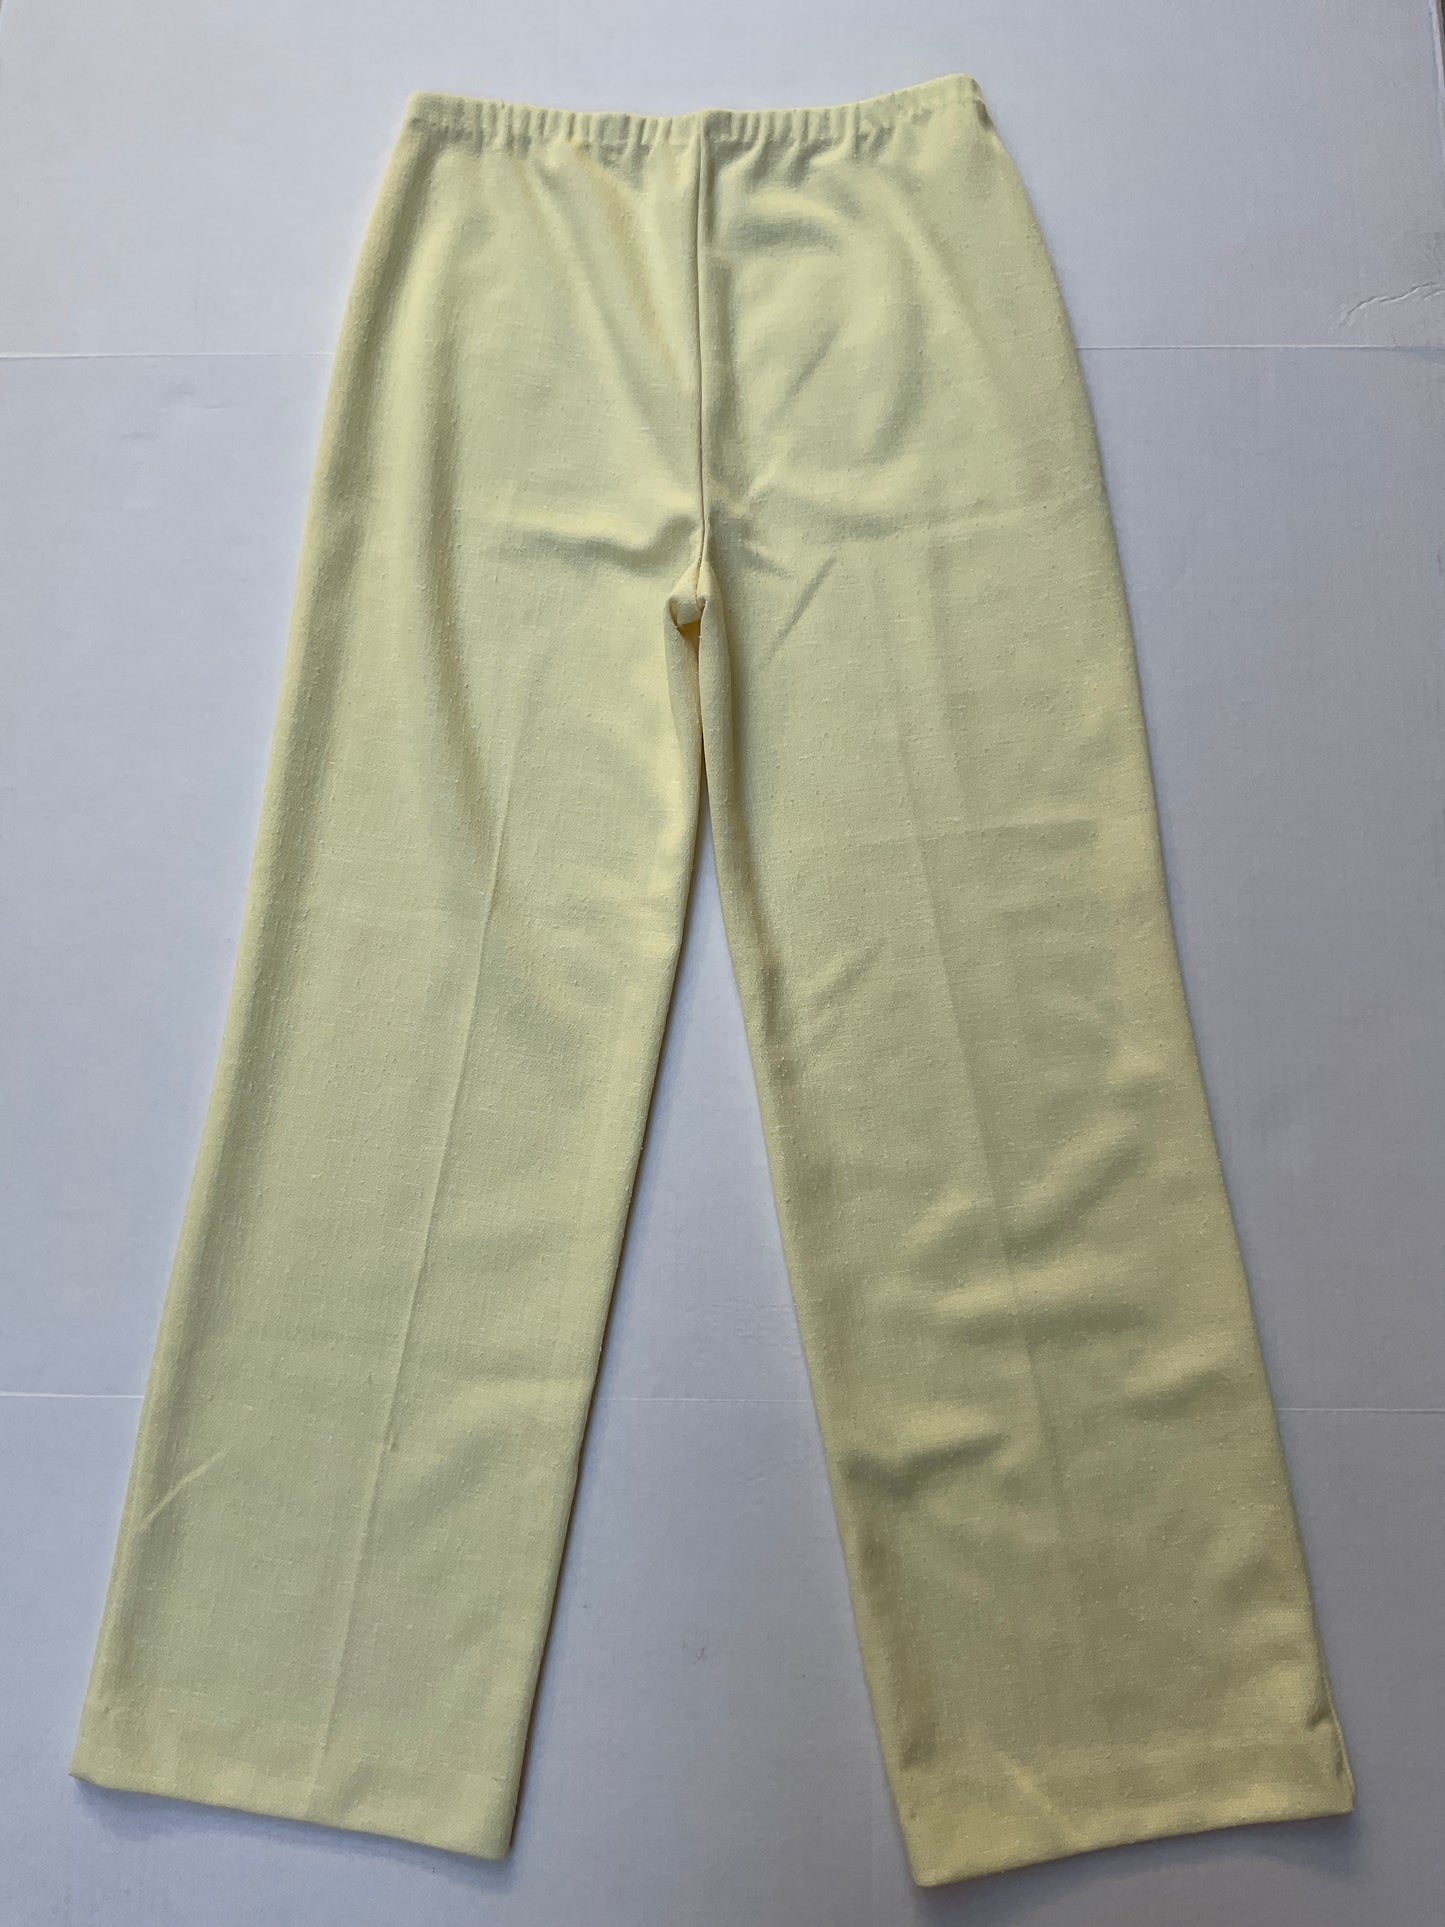 Vintage Pants ~ Lemon Drop